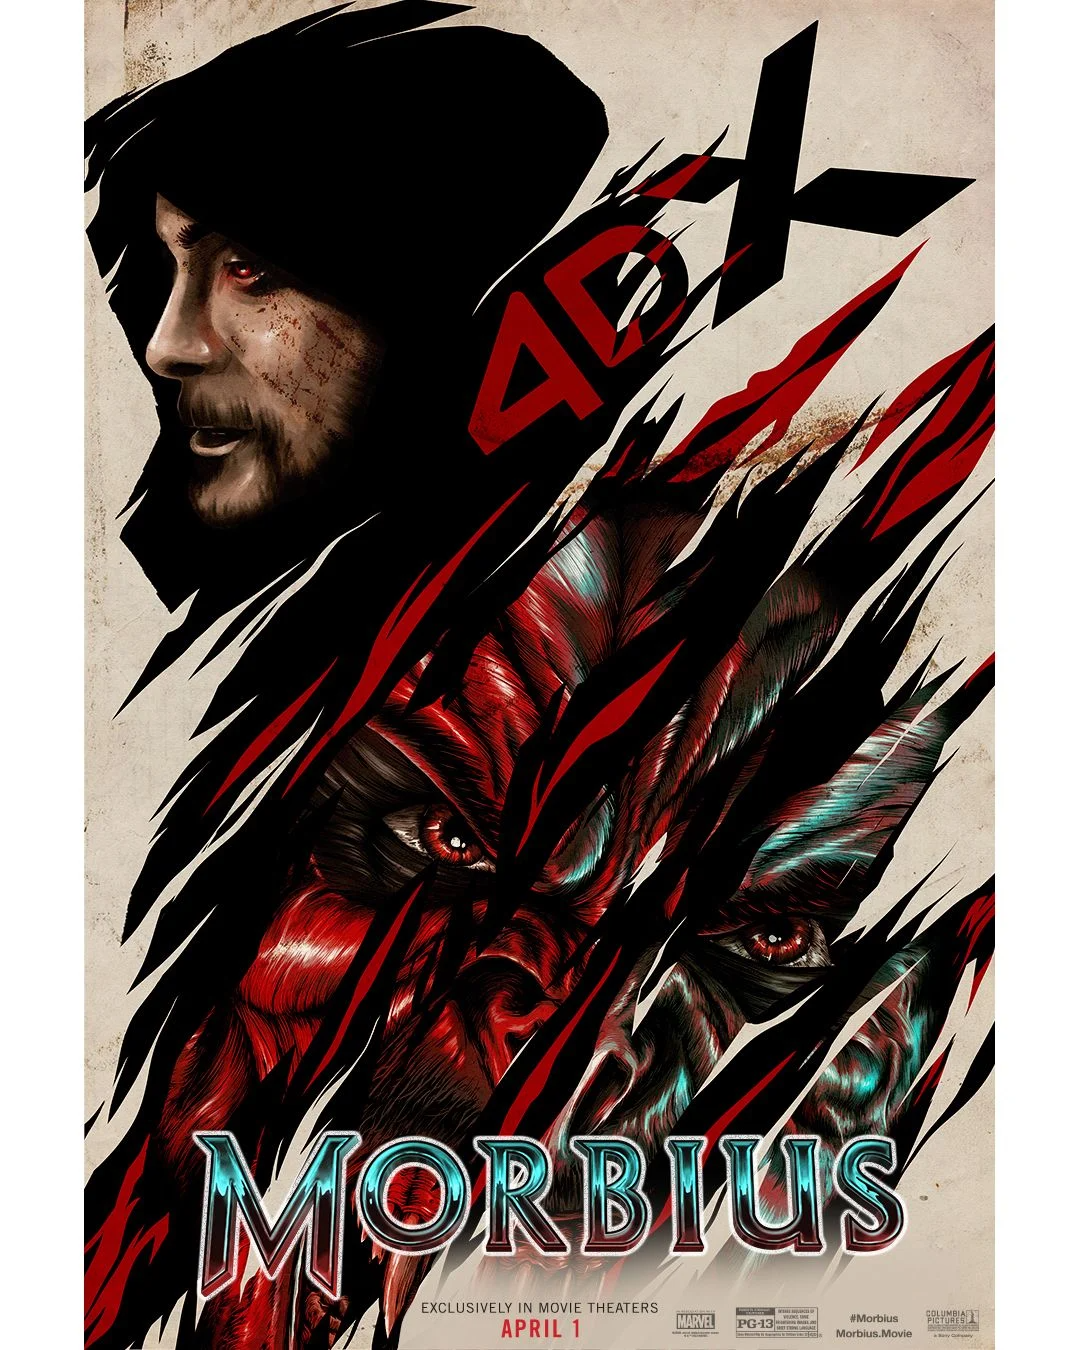 I nuovi poster di Morbius in uscita il 31 Marzo